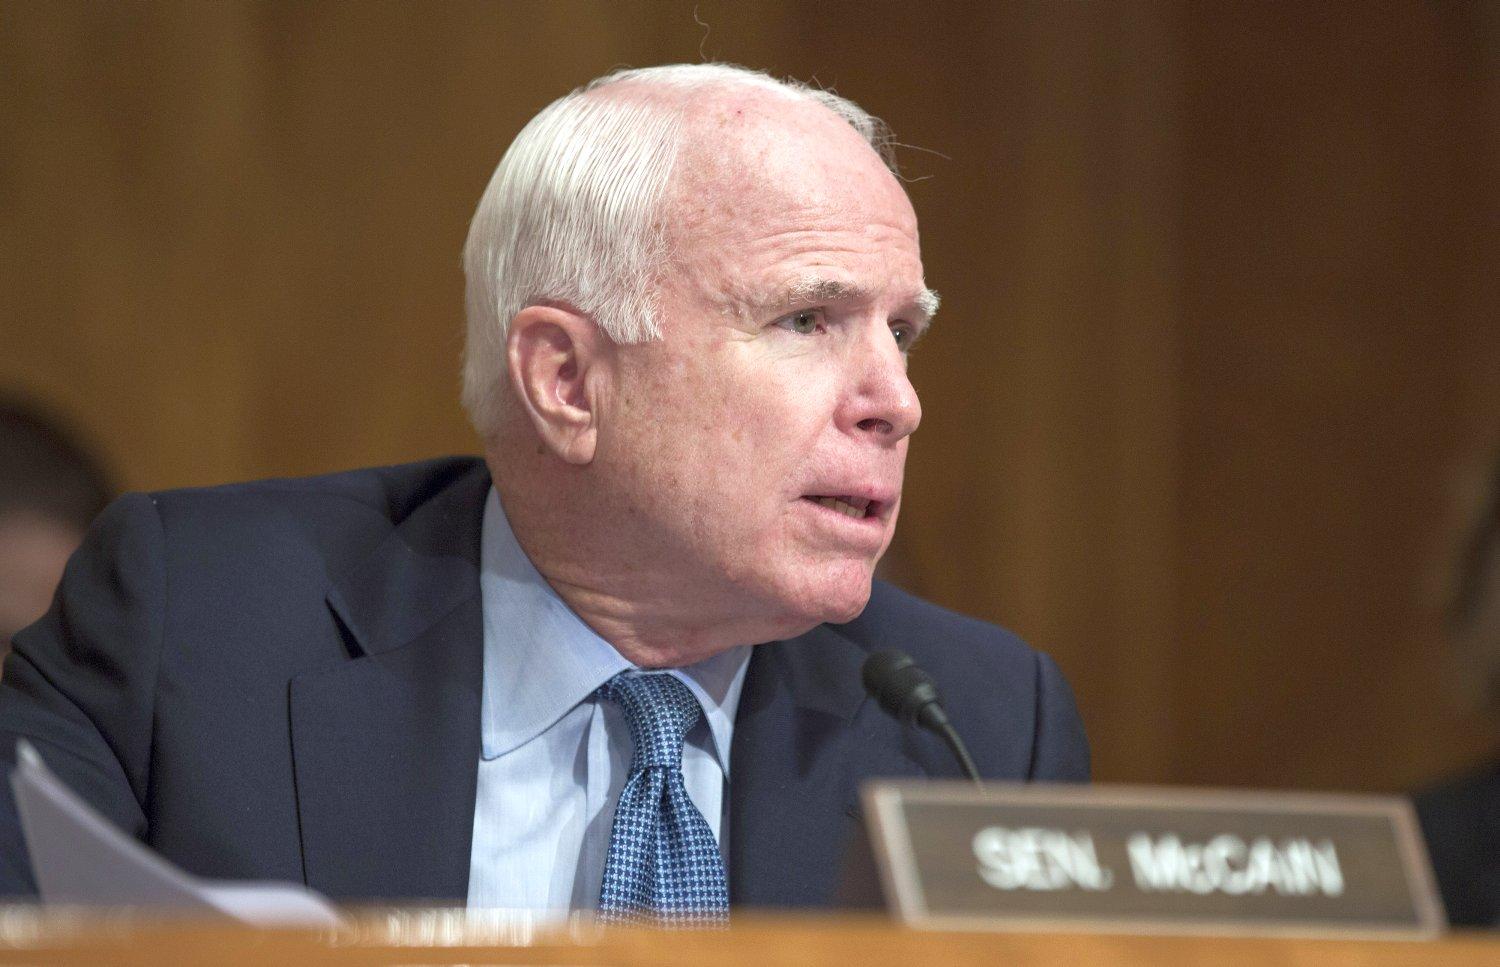 McCain a meghallgatás óta ellenzi Bell delegálását